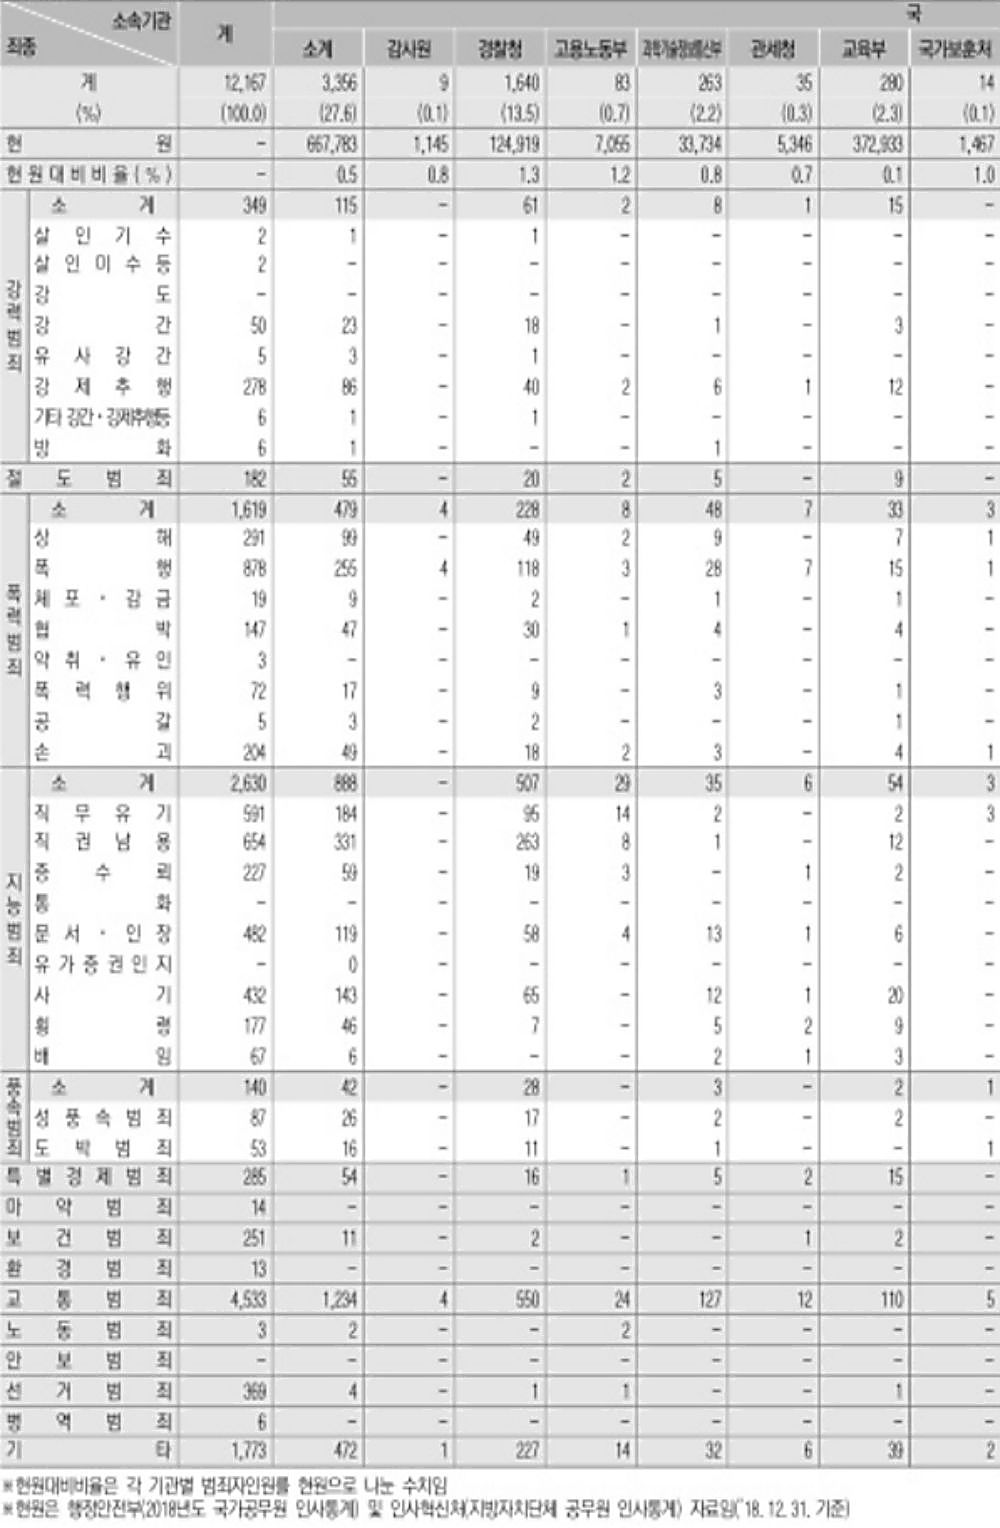 공무원범죄 통계자료 일부 ※ 자료: 경찰청, 제공: 김한정 의원실